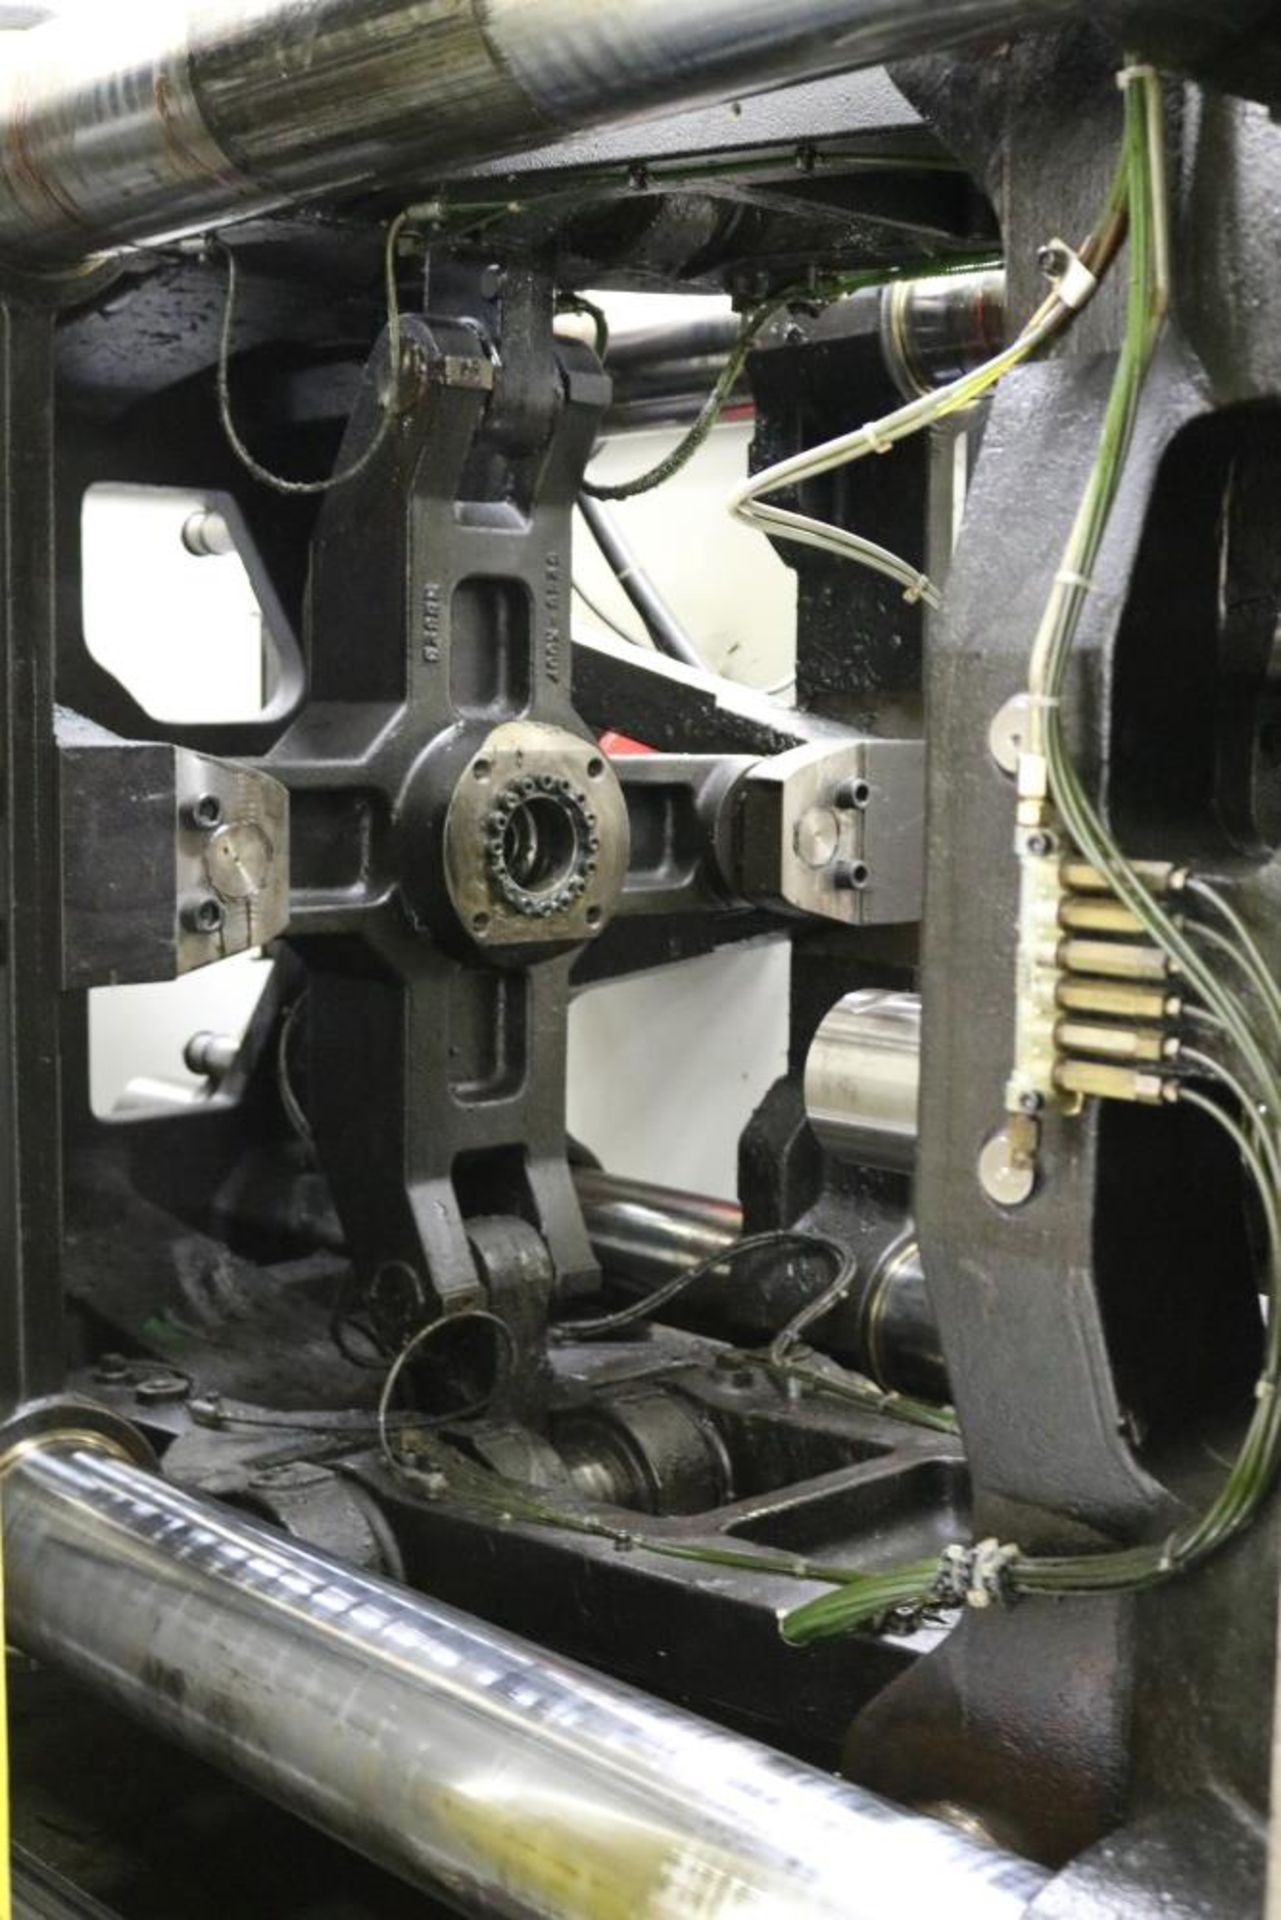 1998 Cincinnati Milacron Roboshot 330 ton Injection Molding Machine Configurable to add 850mm - Image 8 of 19